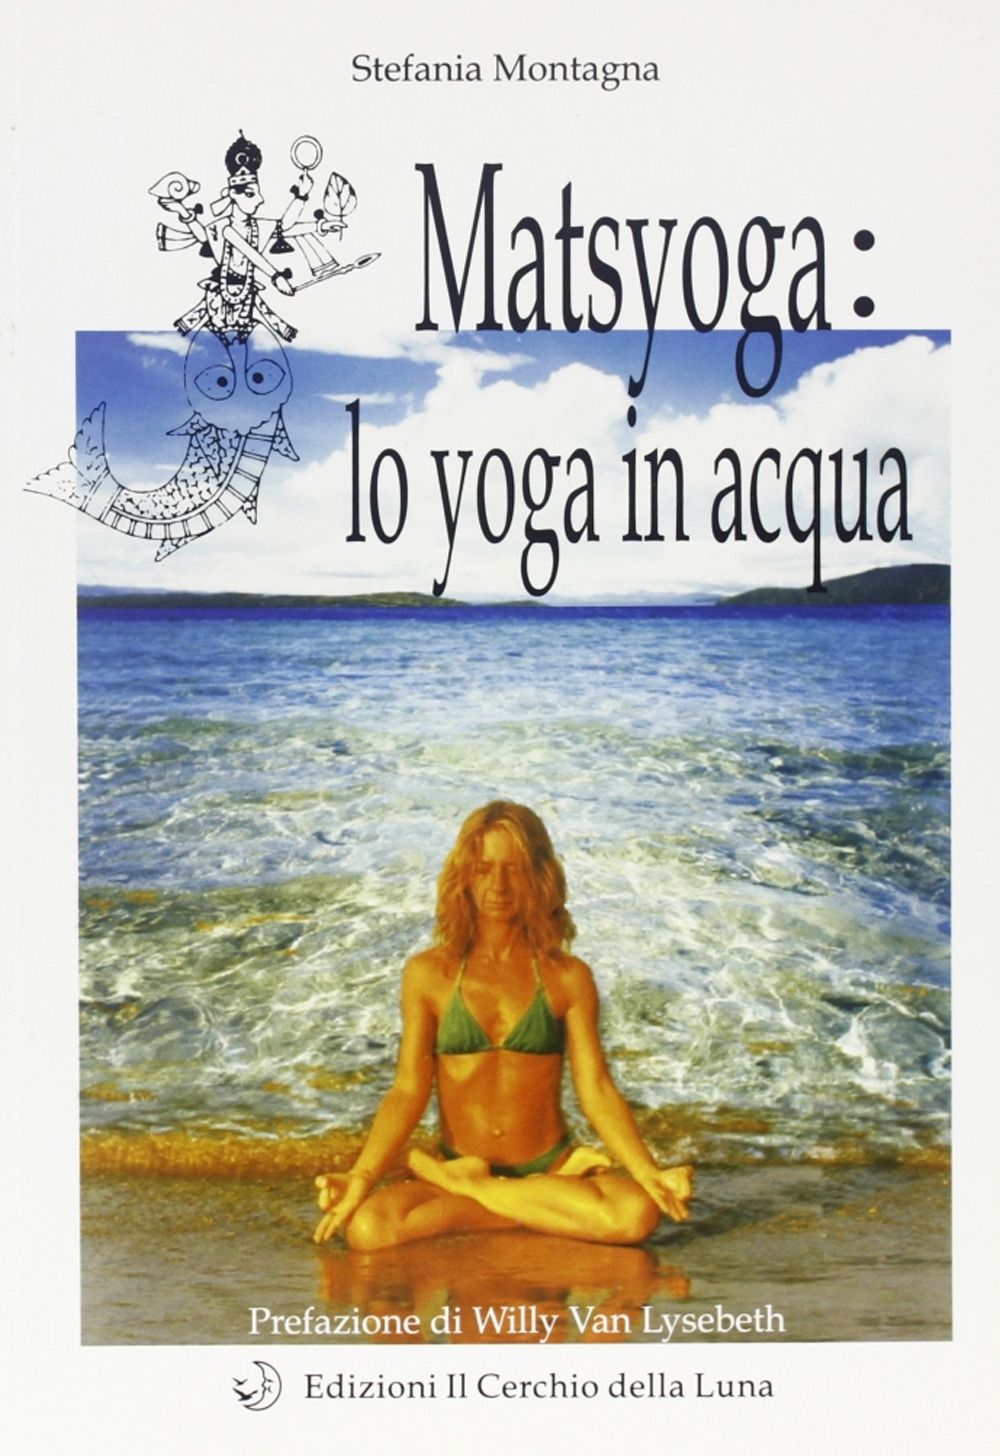 Matsyoga: yoga in acqua